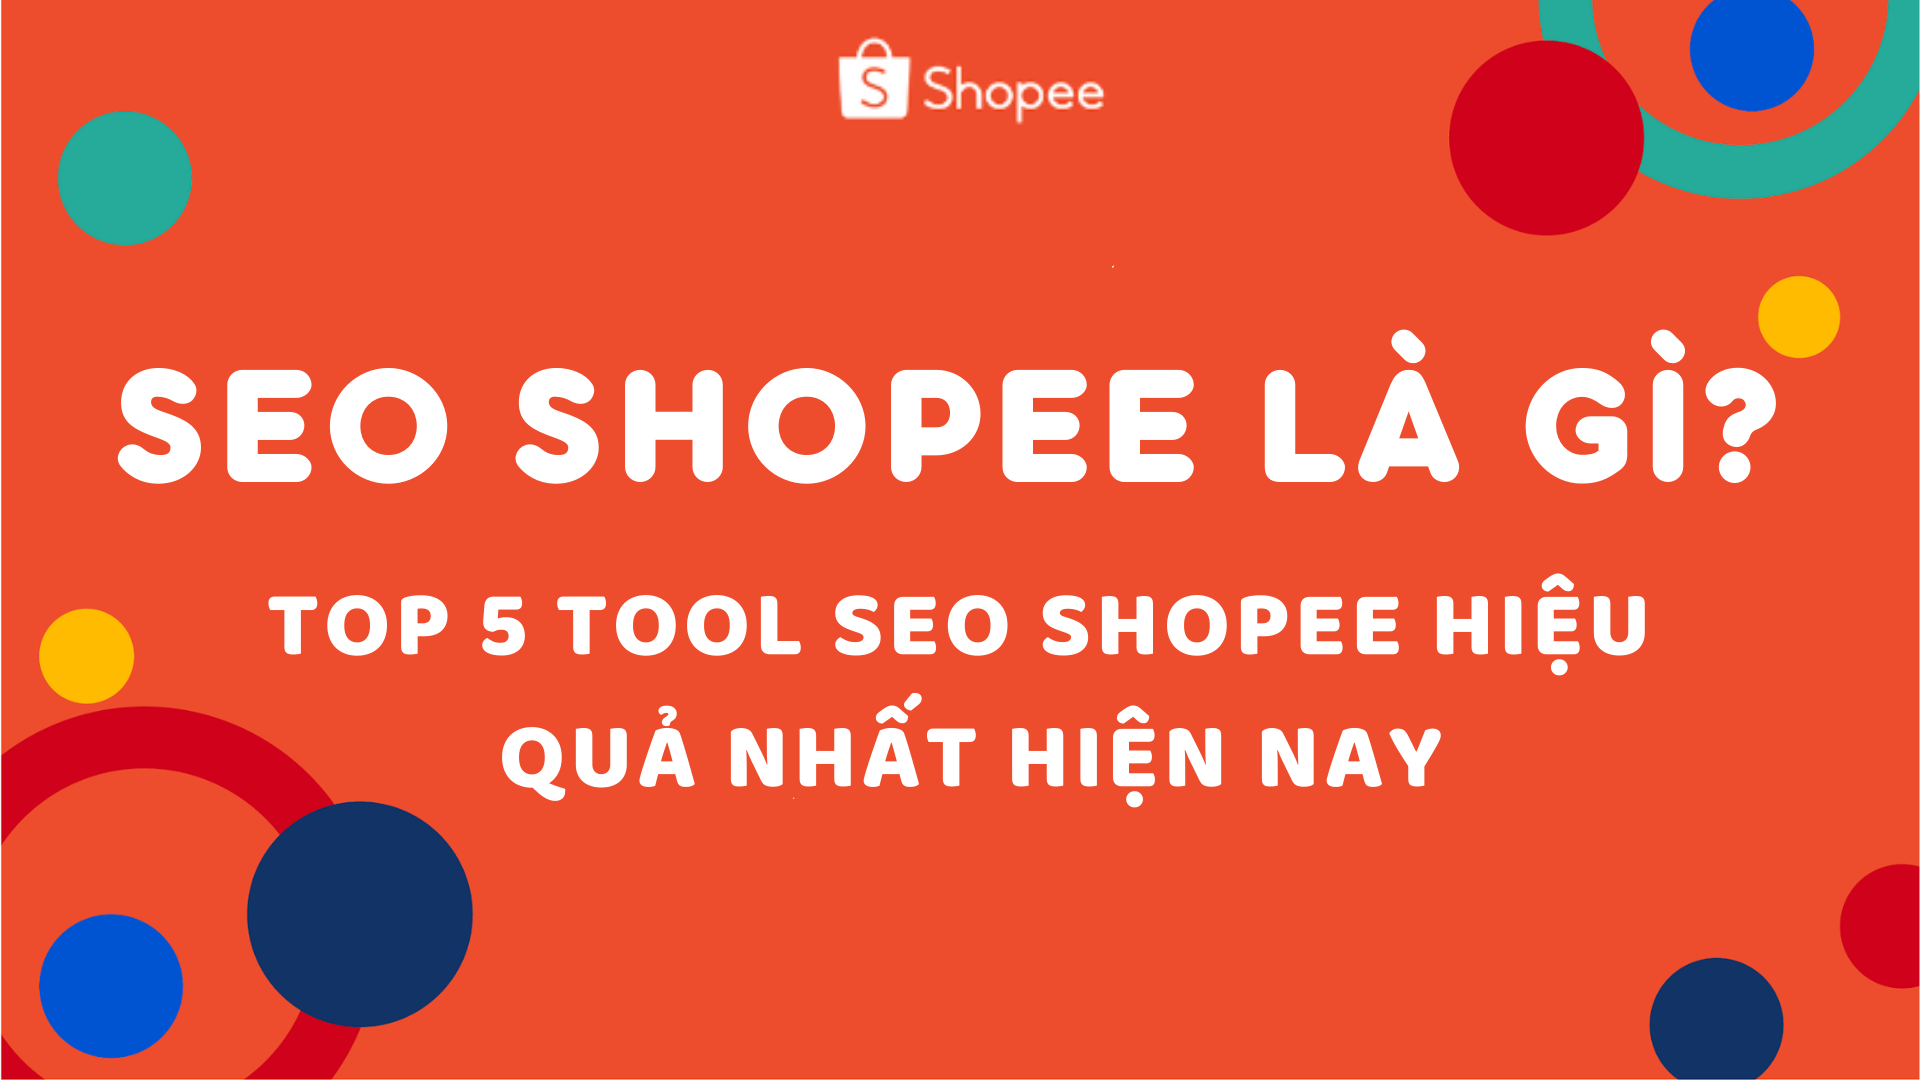 SEO Shopee là gì? Top 5 tool SEO Shopee hiệu quả nhất hiện nay